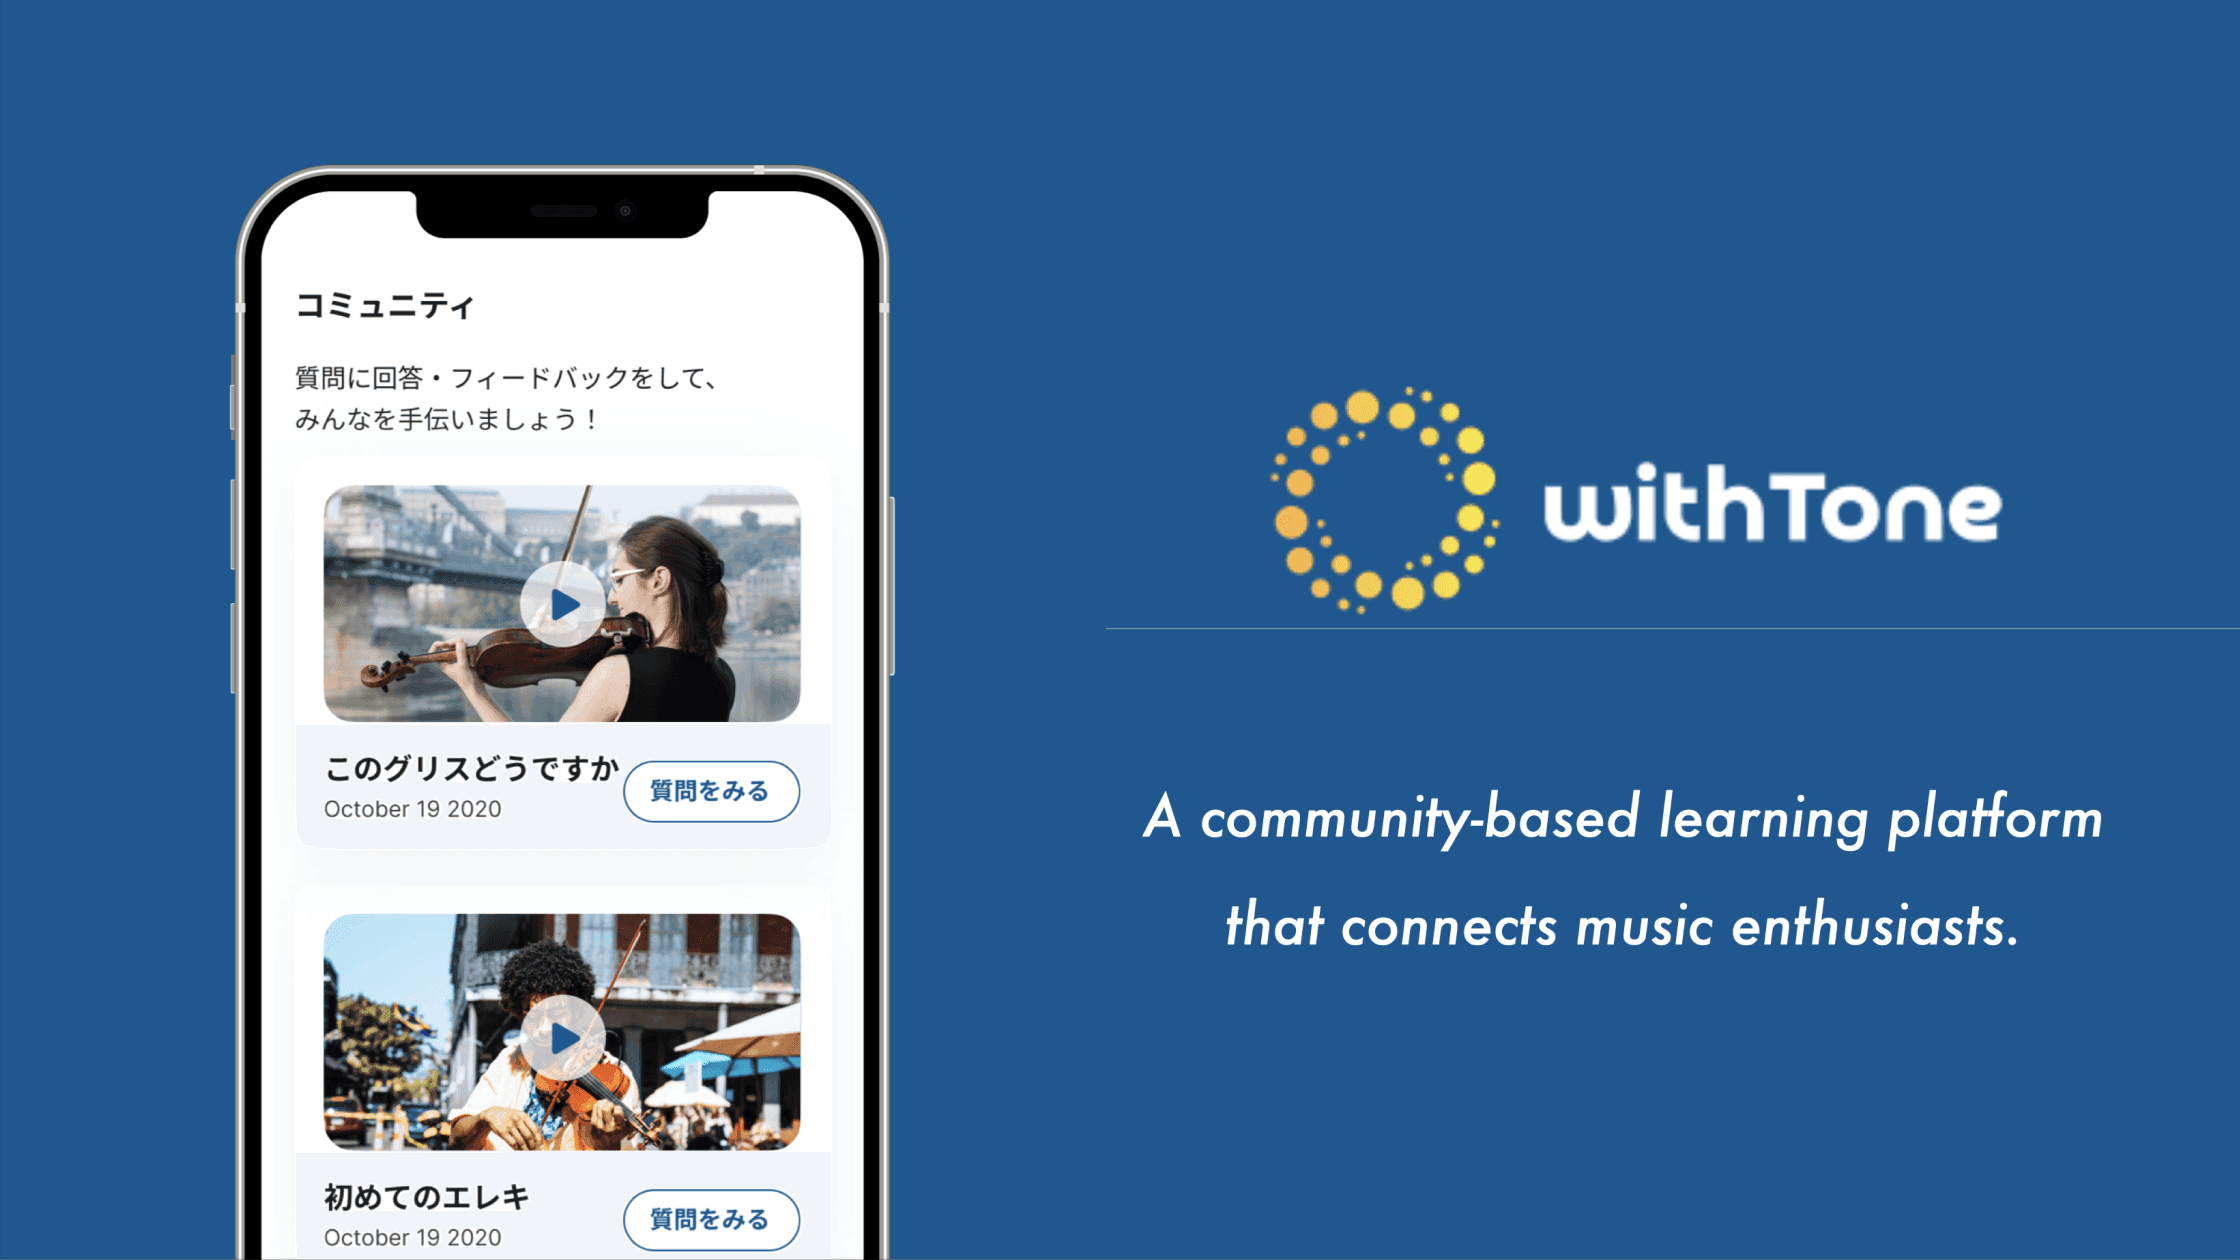 withTone, a community-based learning platform